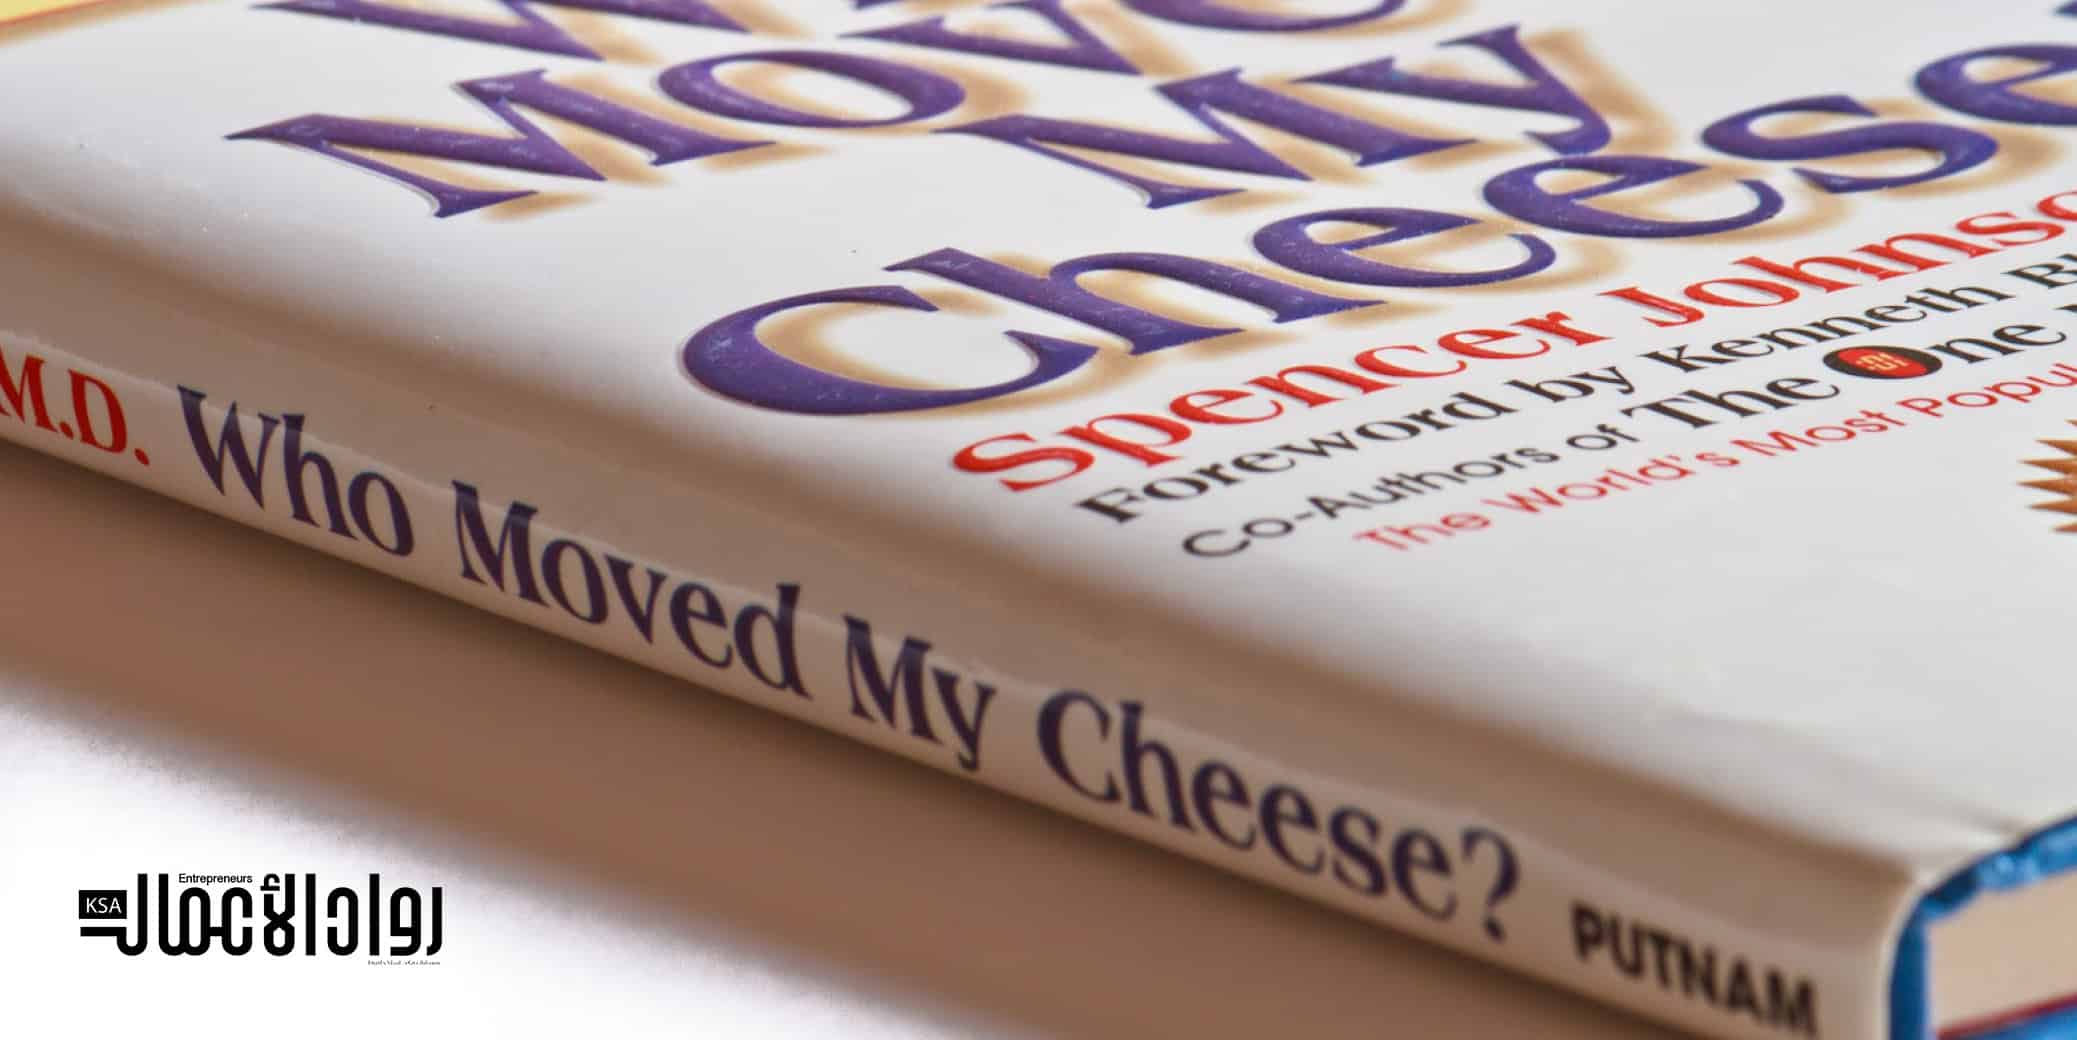 كتاب Who Moved My Cheese